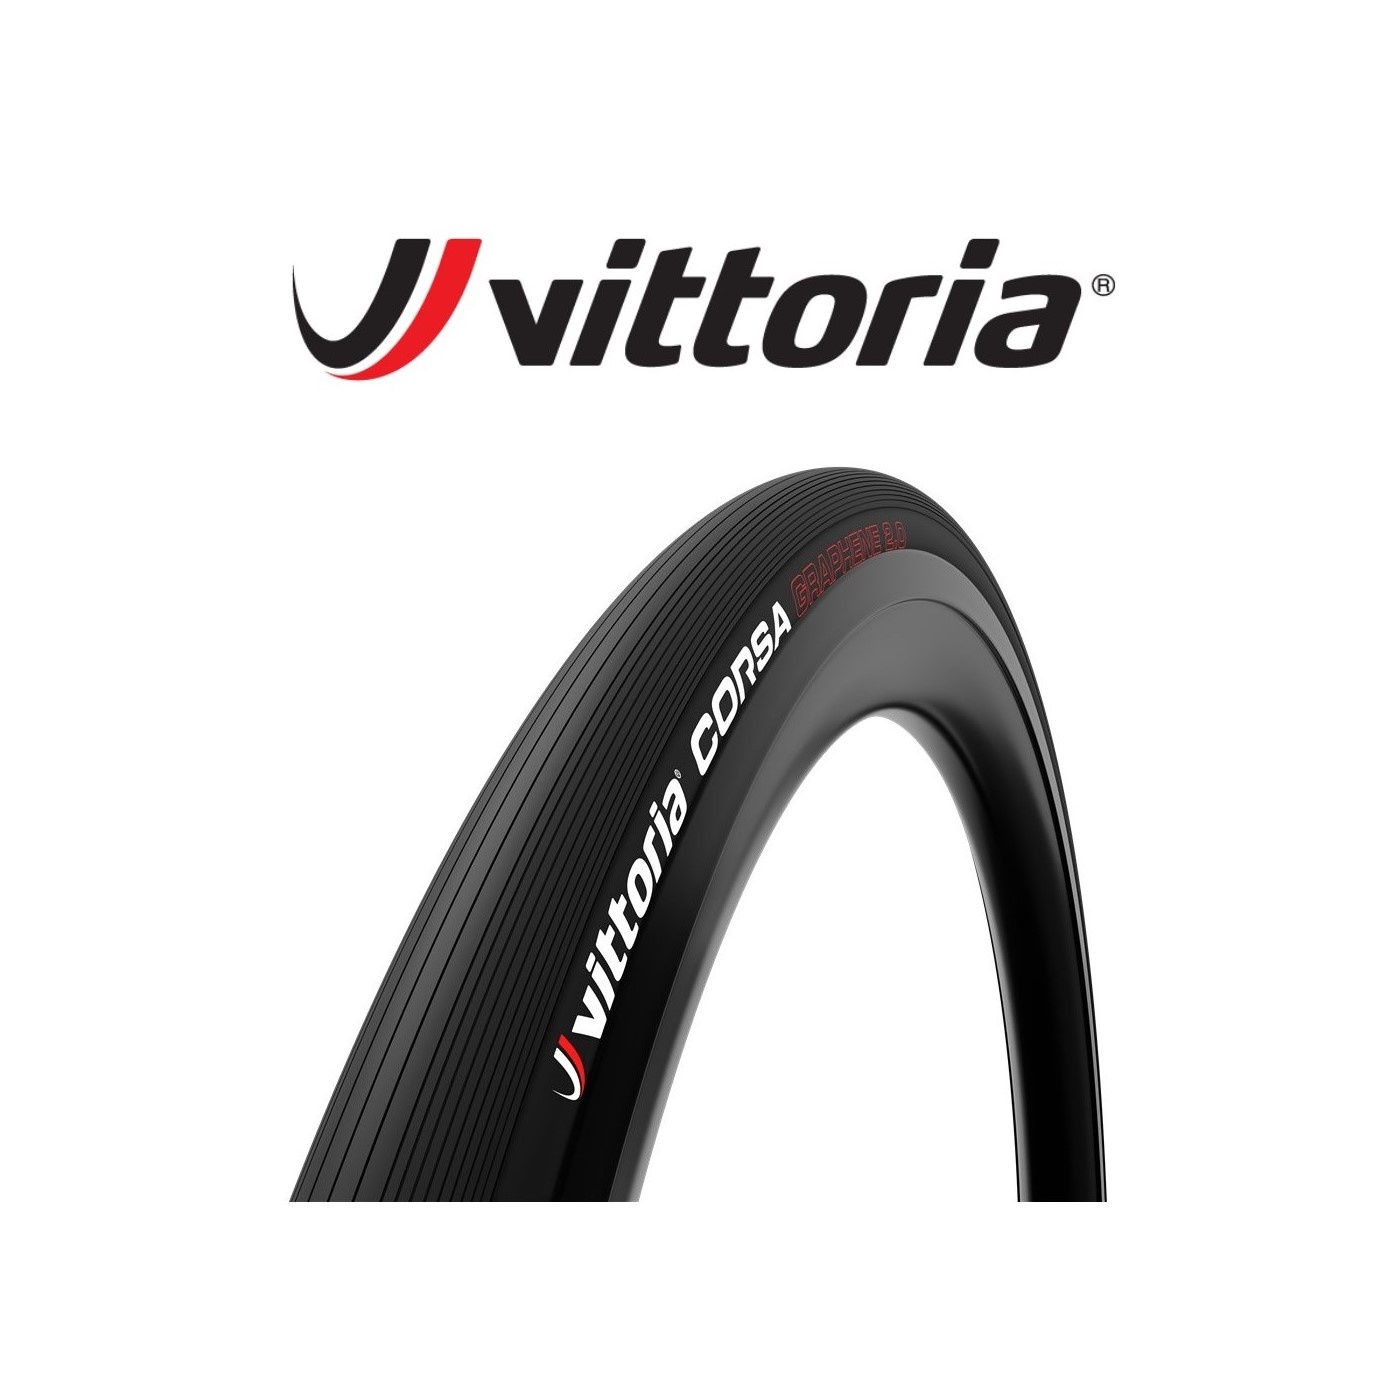 Vittoria Corsa G2.0 Tubeless Ready Road Bike Tire | World Class Bikes